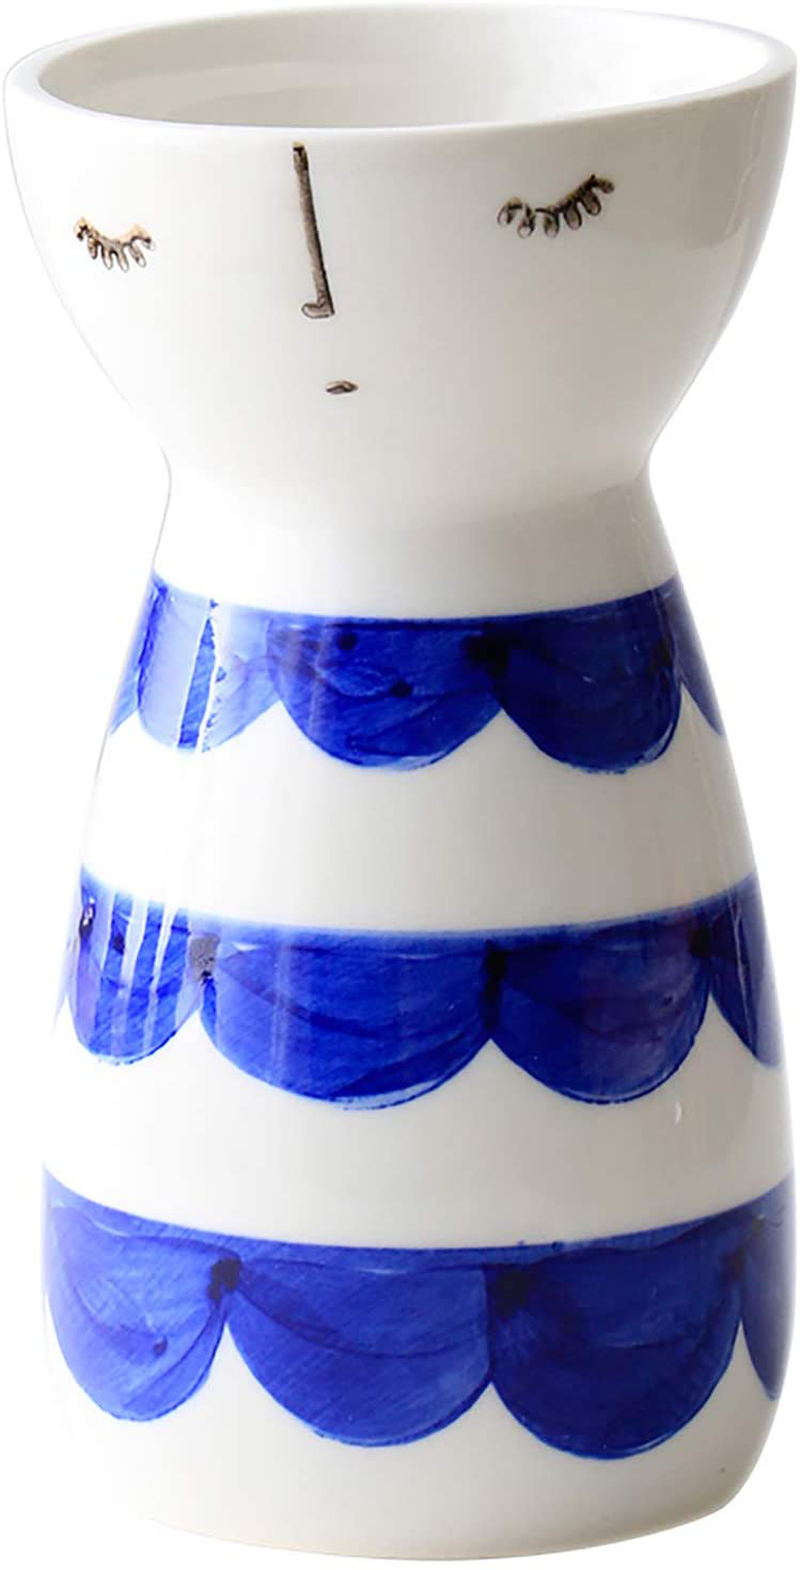 Senliart White Ceramic Vase, Small Flower Vases for Home Décor, 5.9 X 3.2 (Polka Dot) Home & Garden > Decor > Vases Senliart Lace  